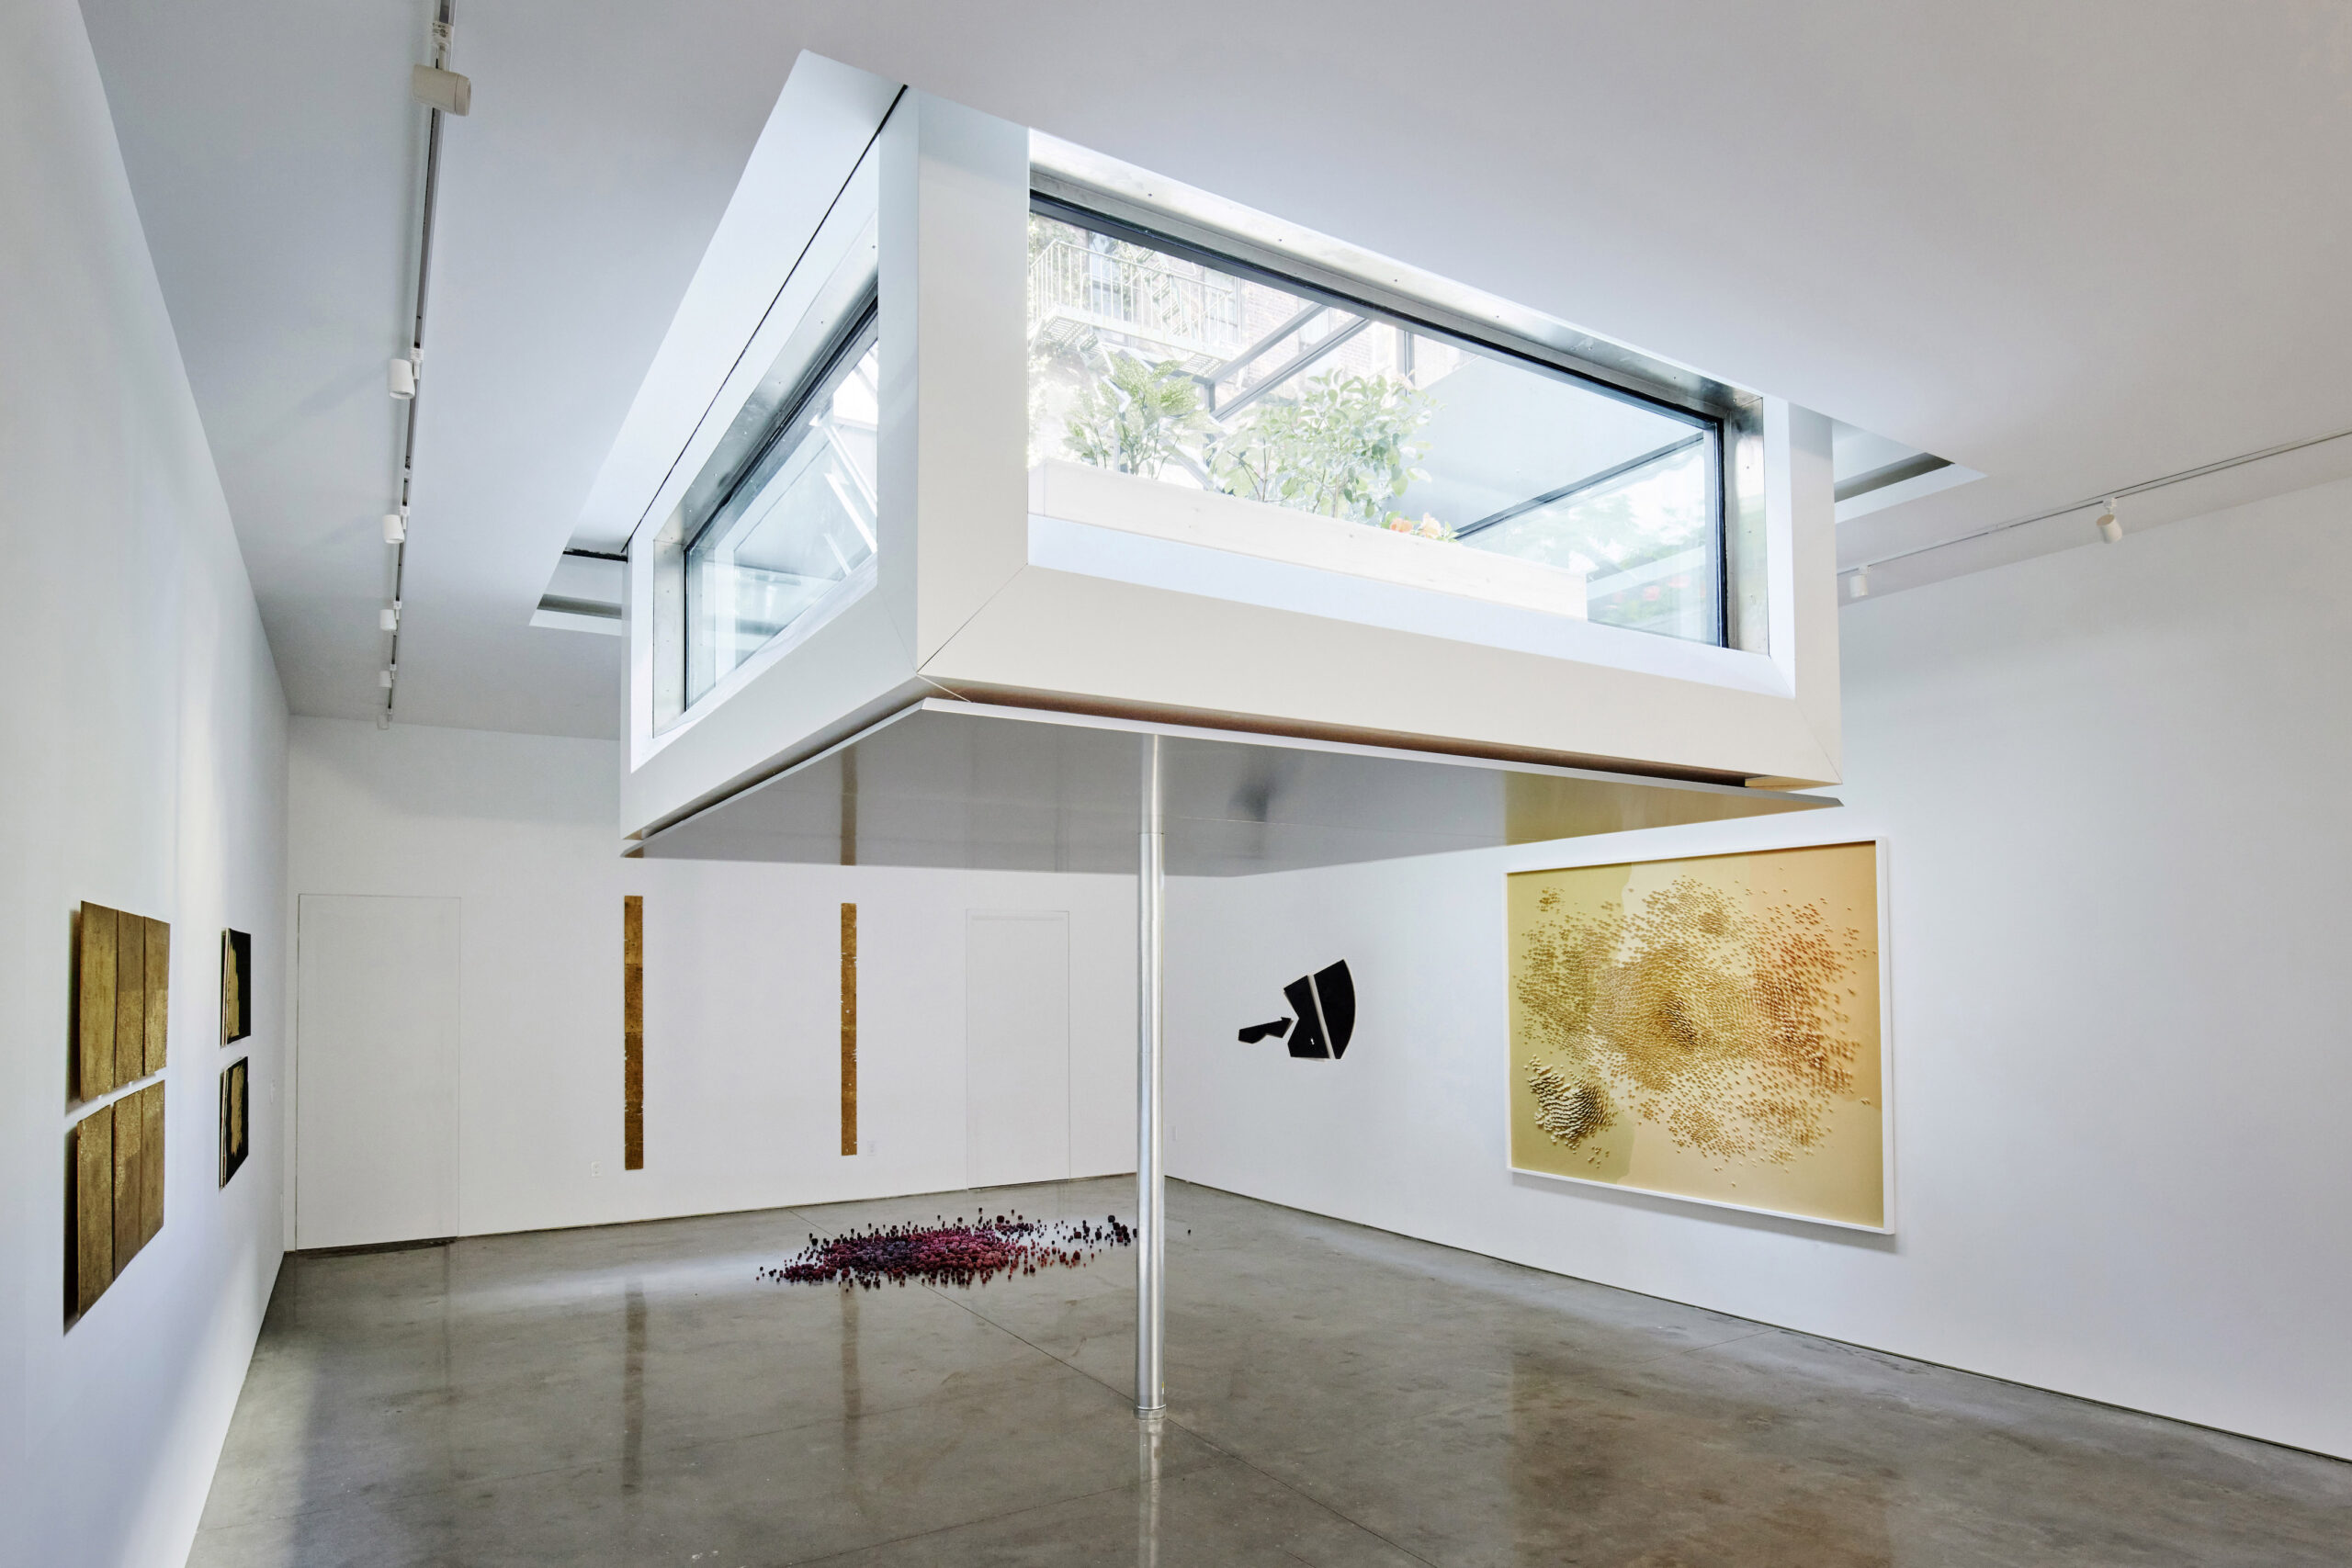 Art House: an extraordinary new hub for art galleries